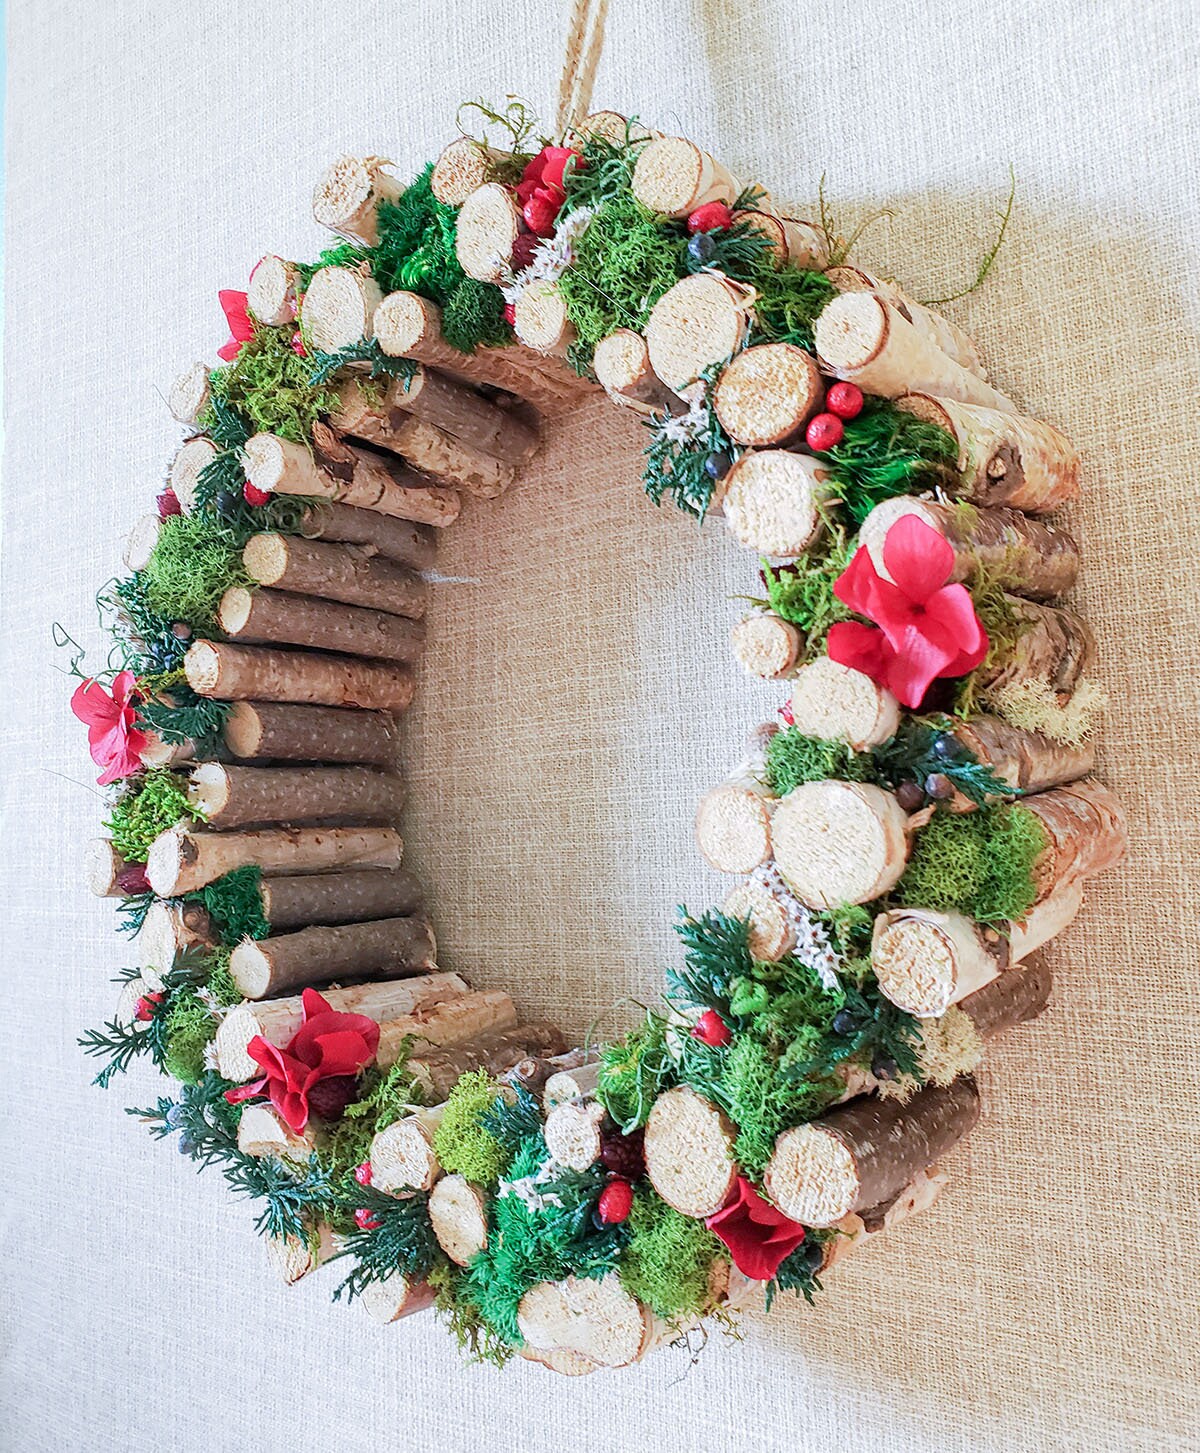 MOSS & BIRCH WREATH for Front Door or Wall Art Decor | Christmas Wreath | Moss Wall | Fresh Wreath | Fall Natural Wreath | Wooden Wreaths